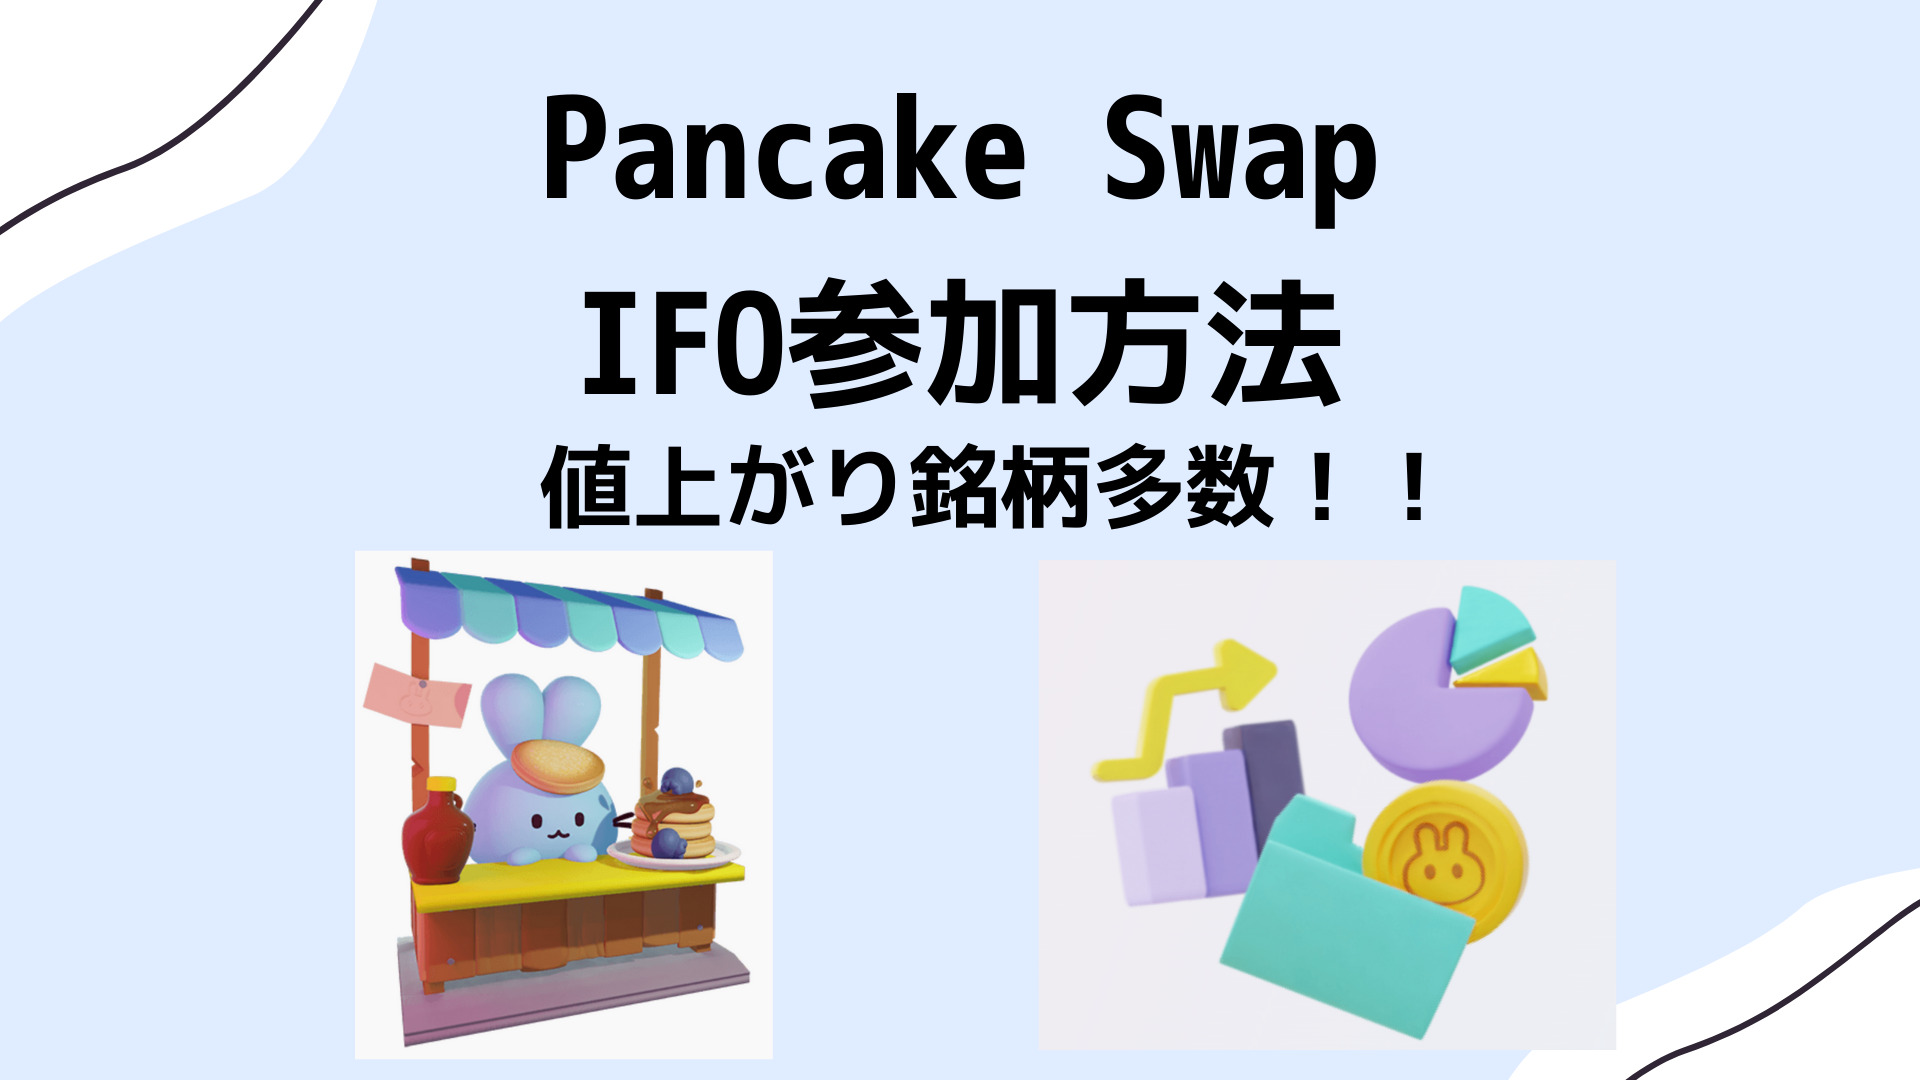 Pancake Swap IFO参加方法